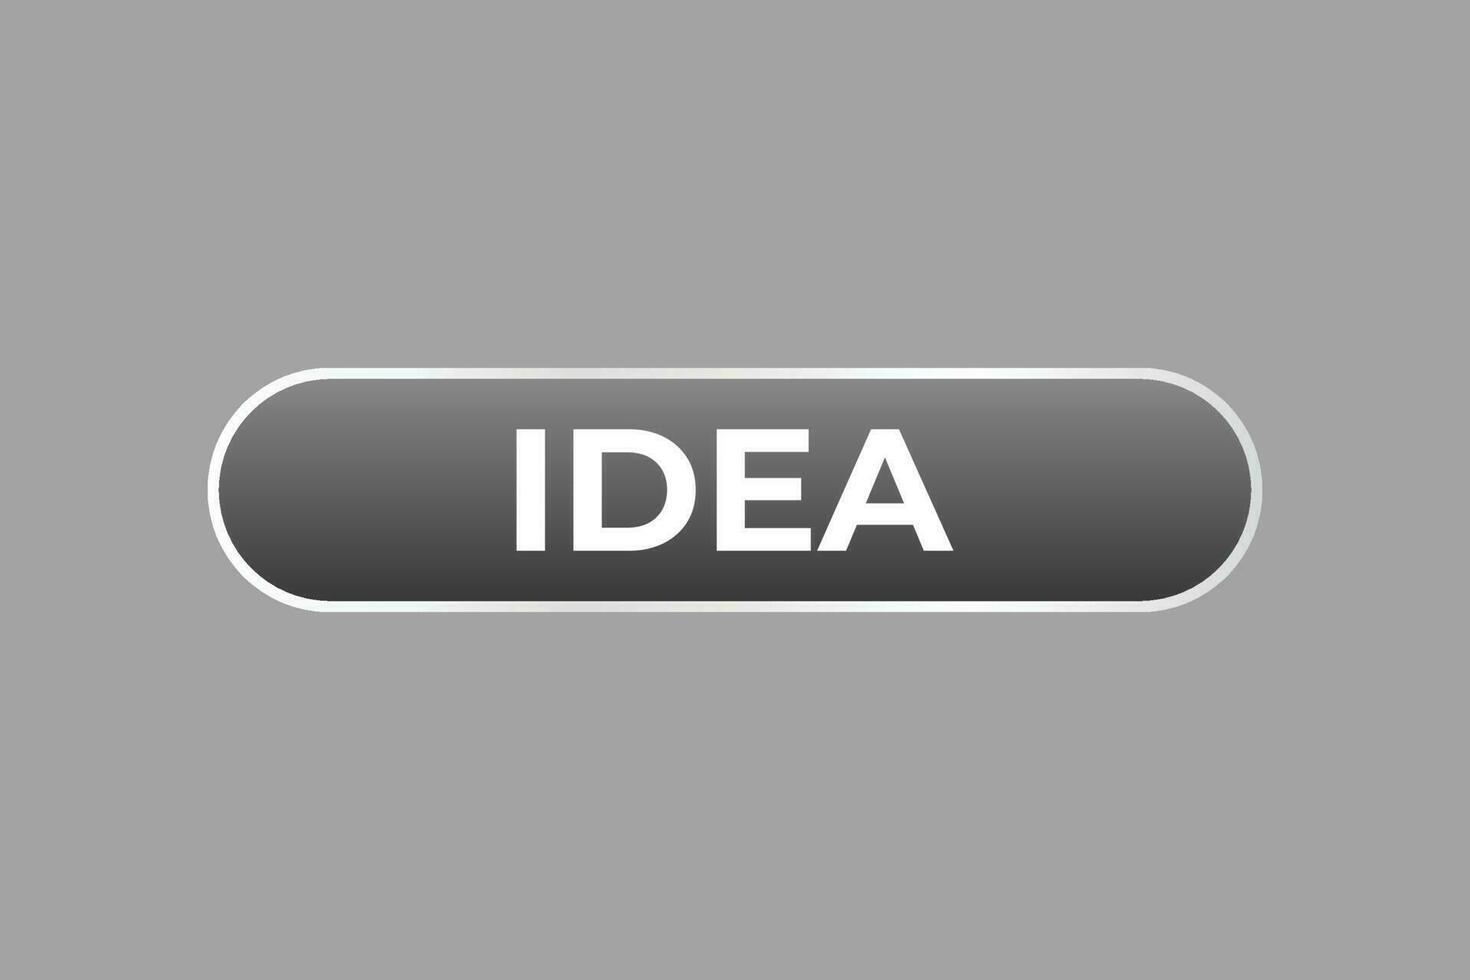 Idee Taste. Rede Blase, Banner Etikette Idee vektor